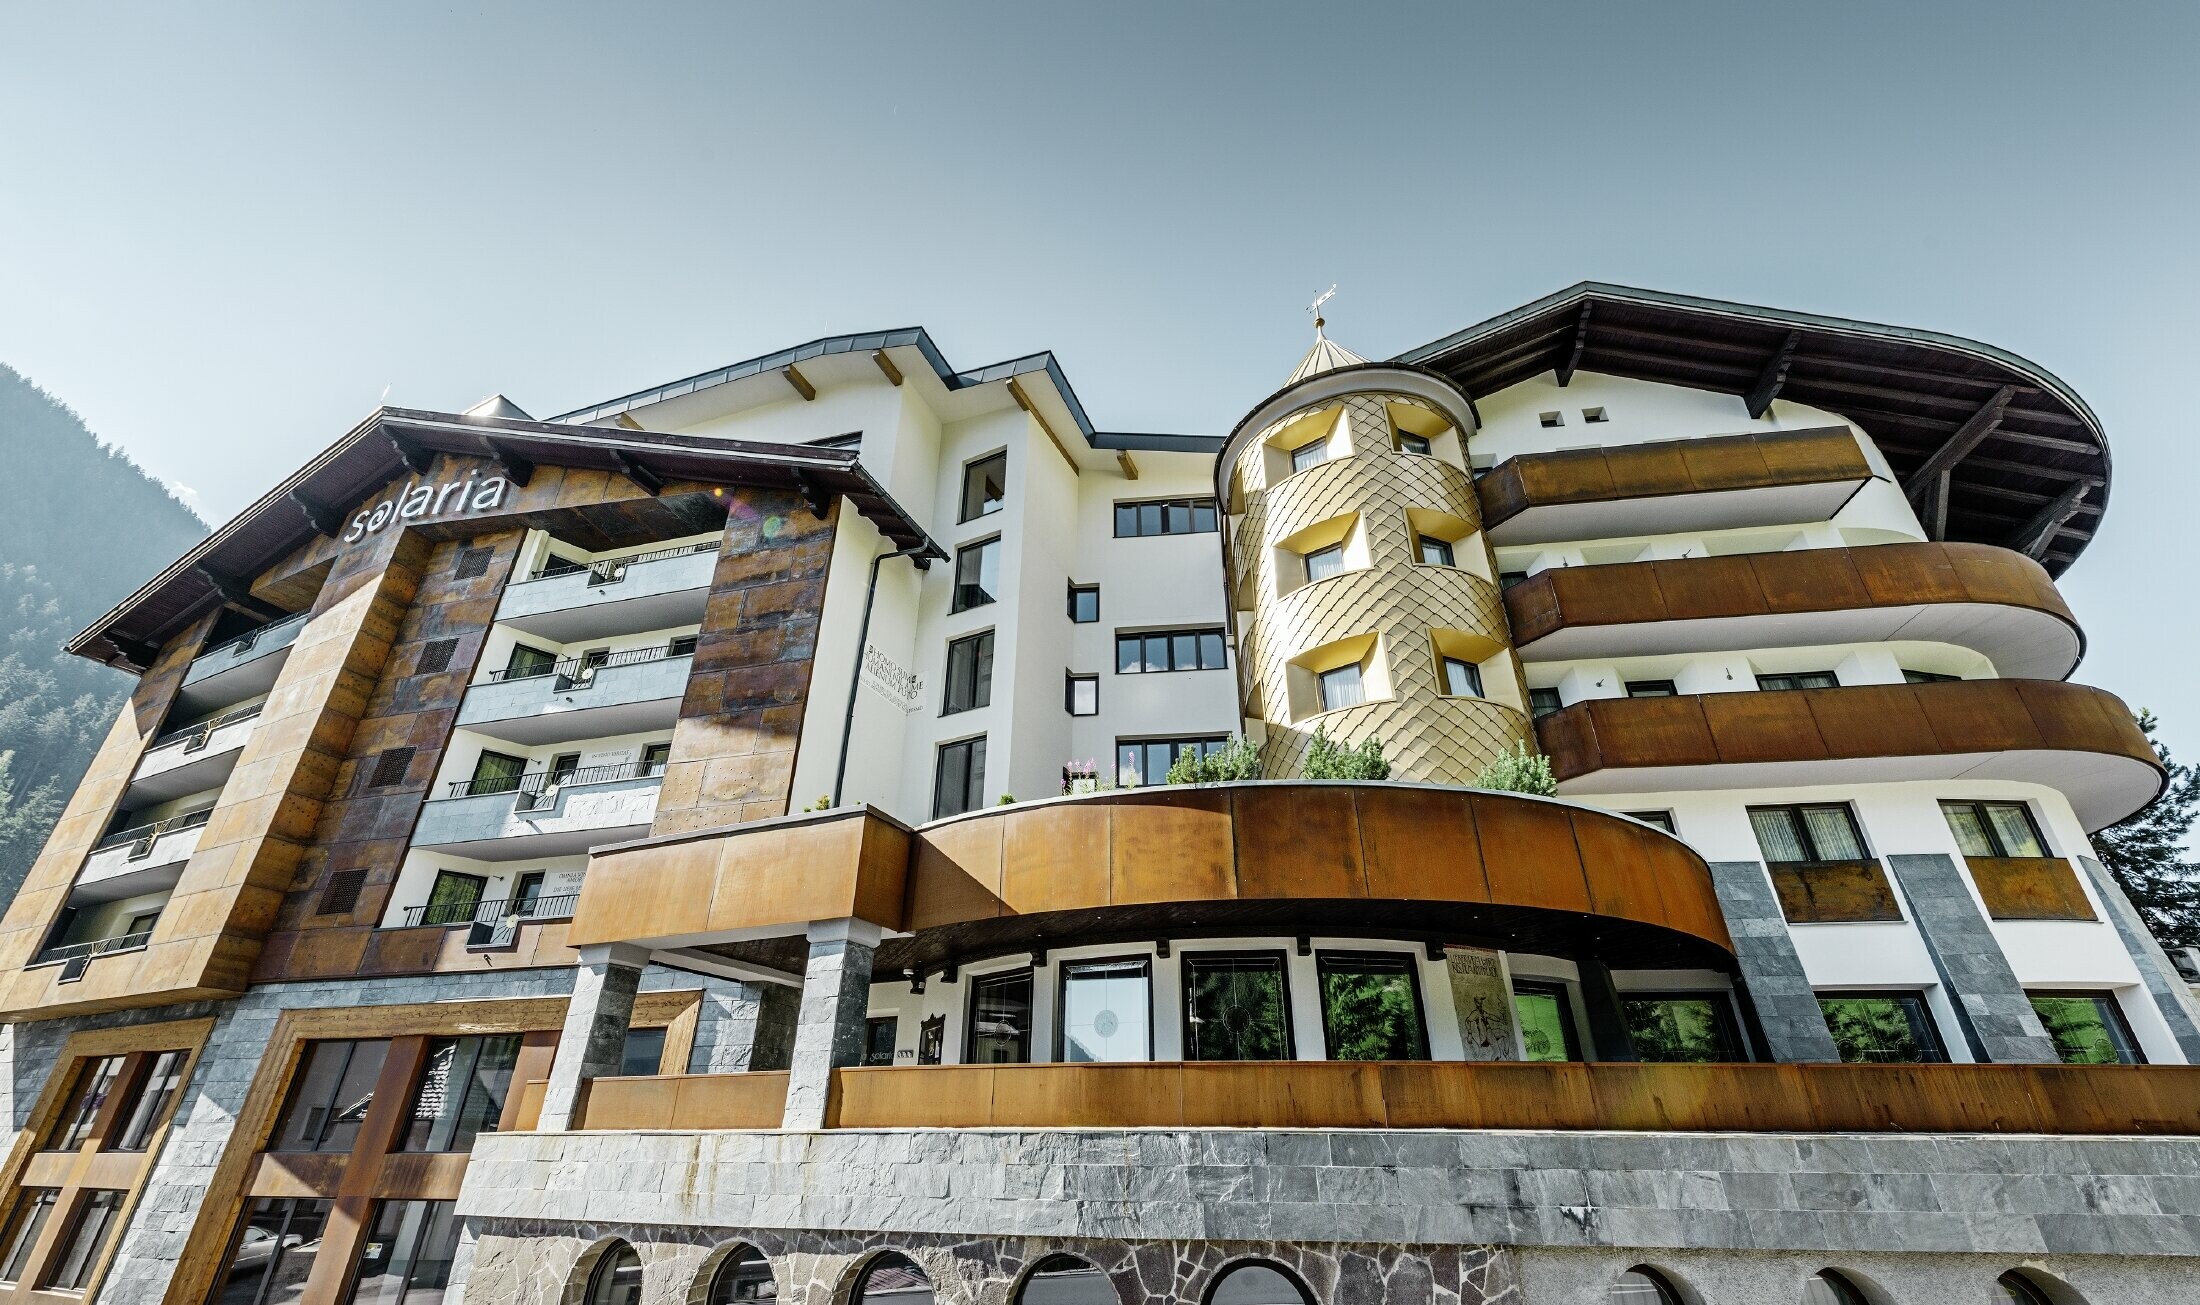 Hôtel traditionnel d’Ischgl avec balcons et façade en bois — Façade de la tour habillée de losanges en aluminium PREFA de couleur or